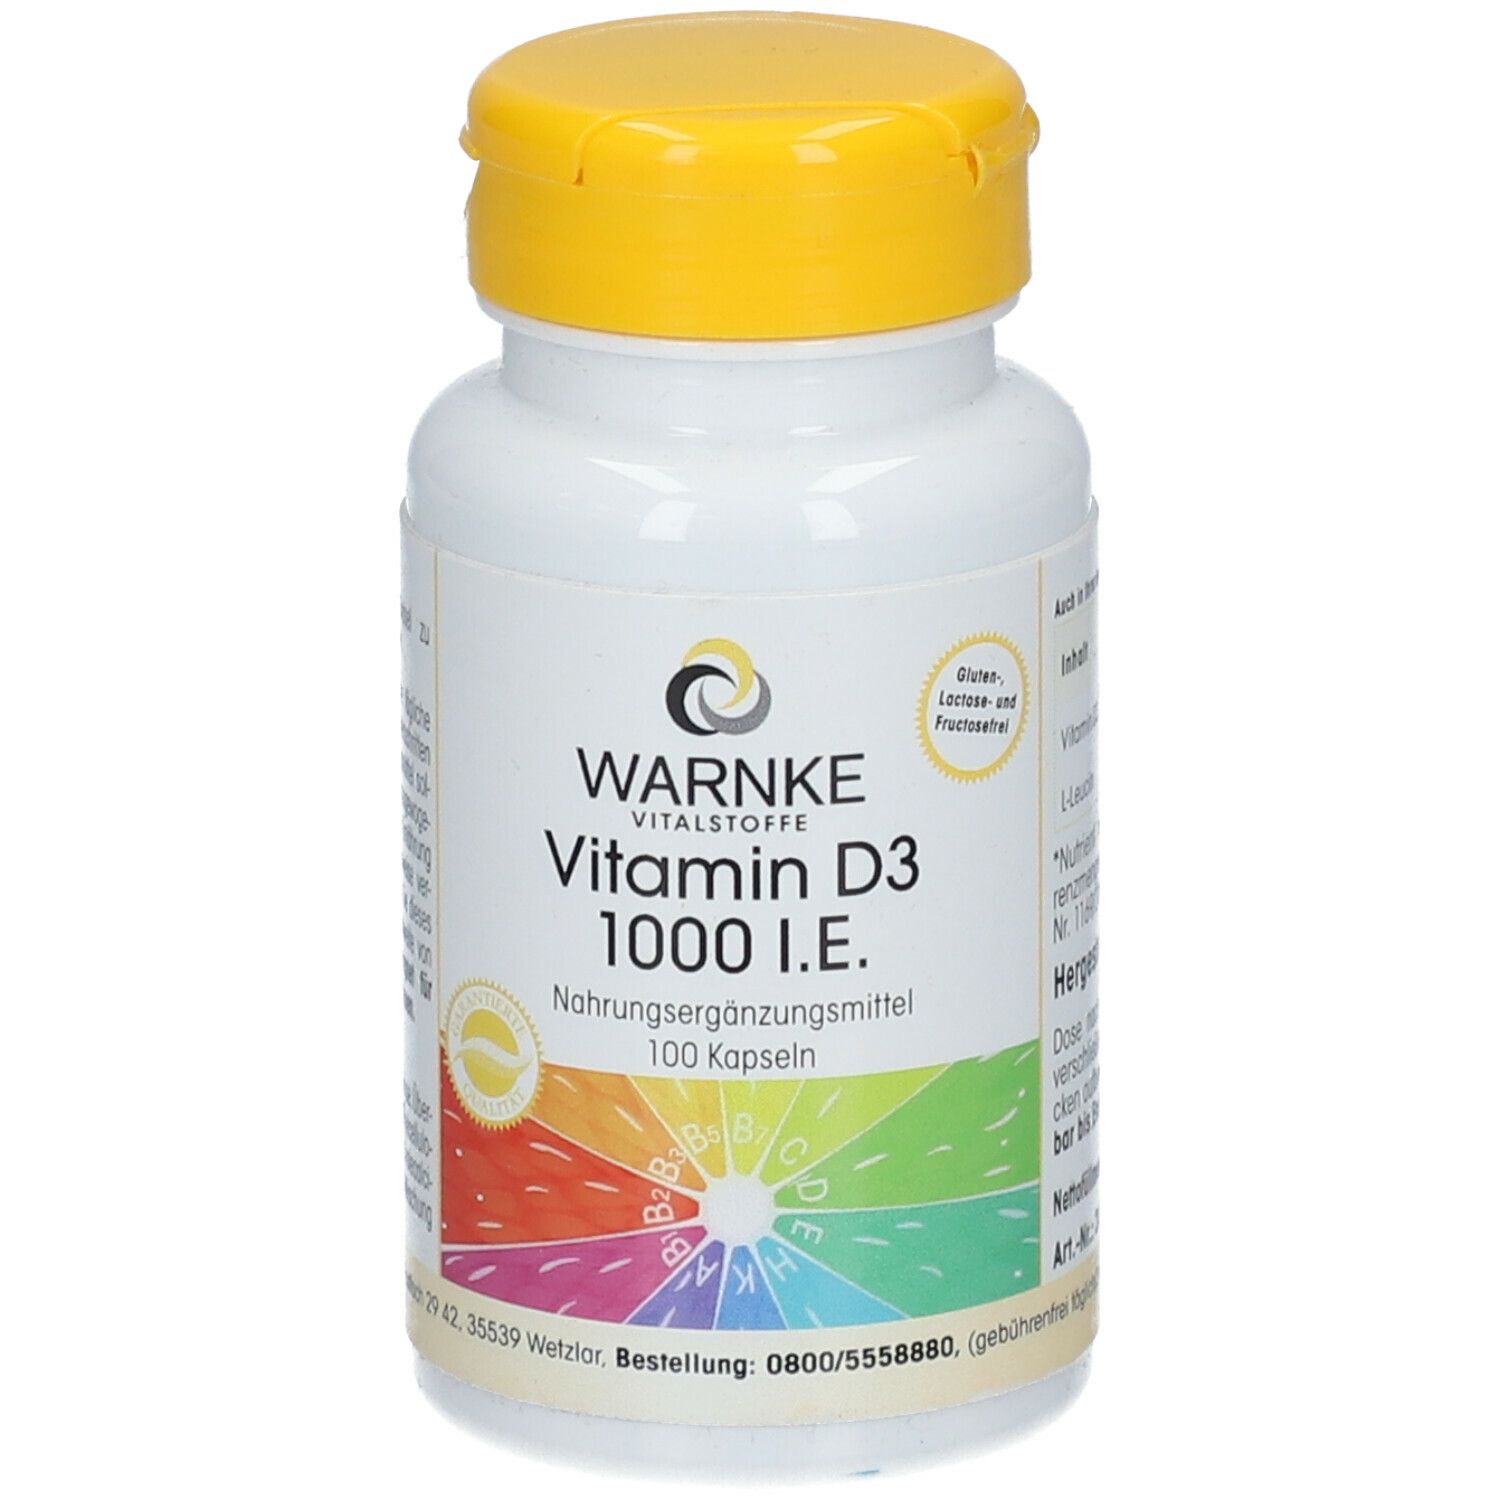 WARNKE Vitamin D3 1.000 I.E.